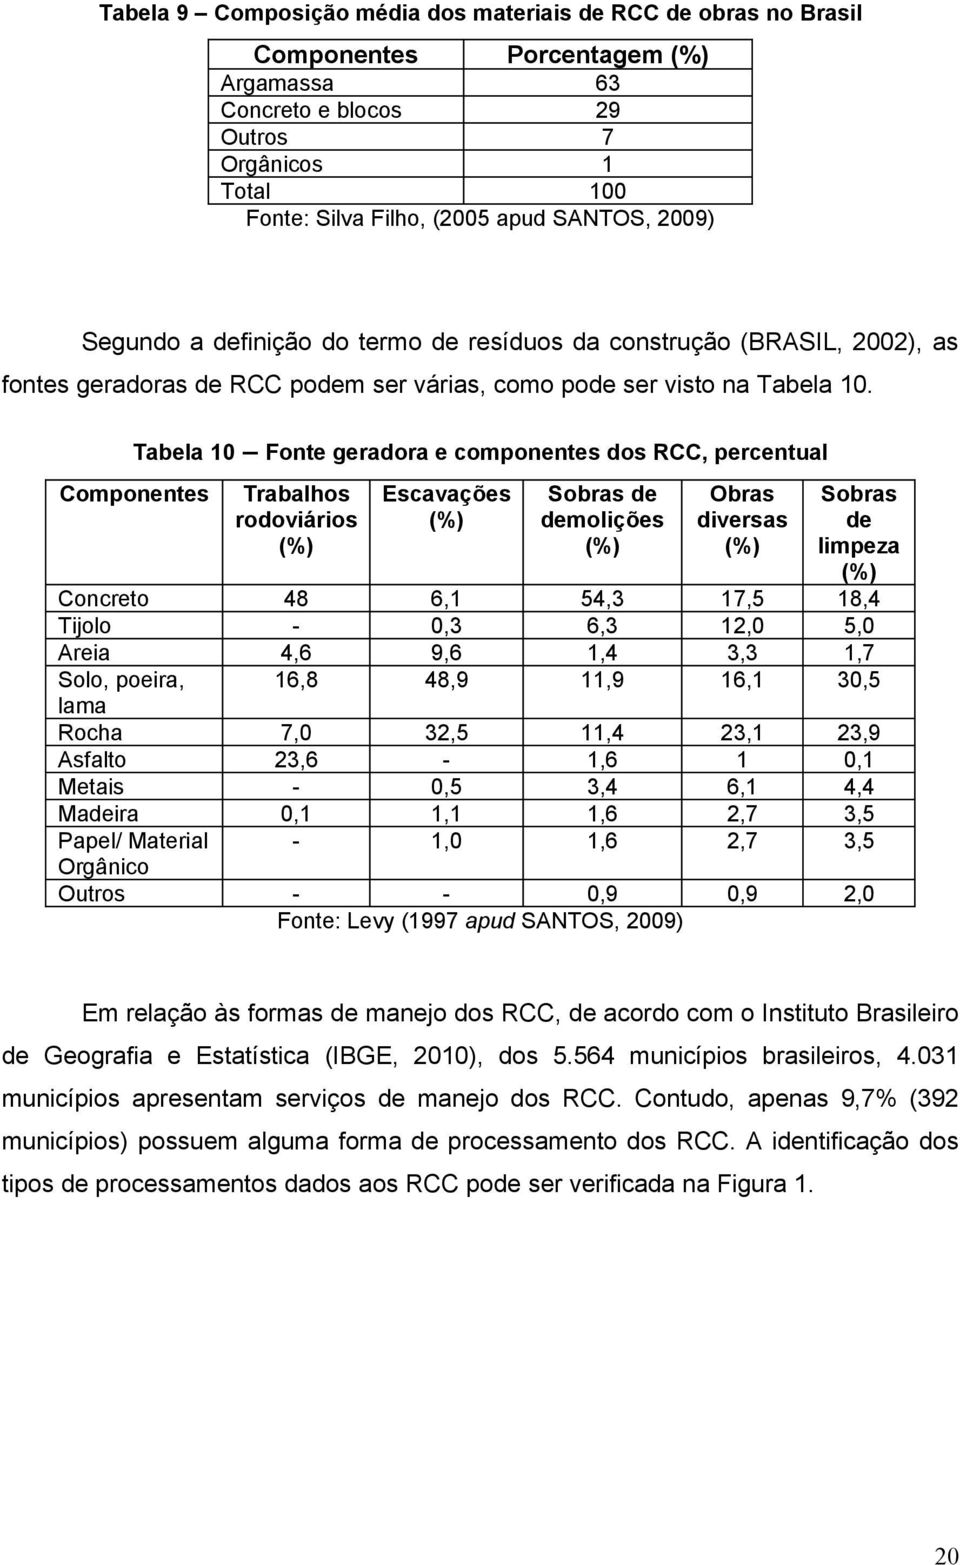 Tabela 10 Fonte geradora e componentes dos RCC, percentual Componentes Trabalhos rodoviários (%) Escavações (%) Sobras de demolições (%) Obras diversas (%) Sobras de limpeza (%) Concreto 48 6,1 54,3